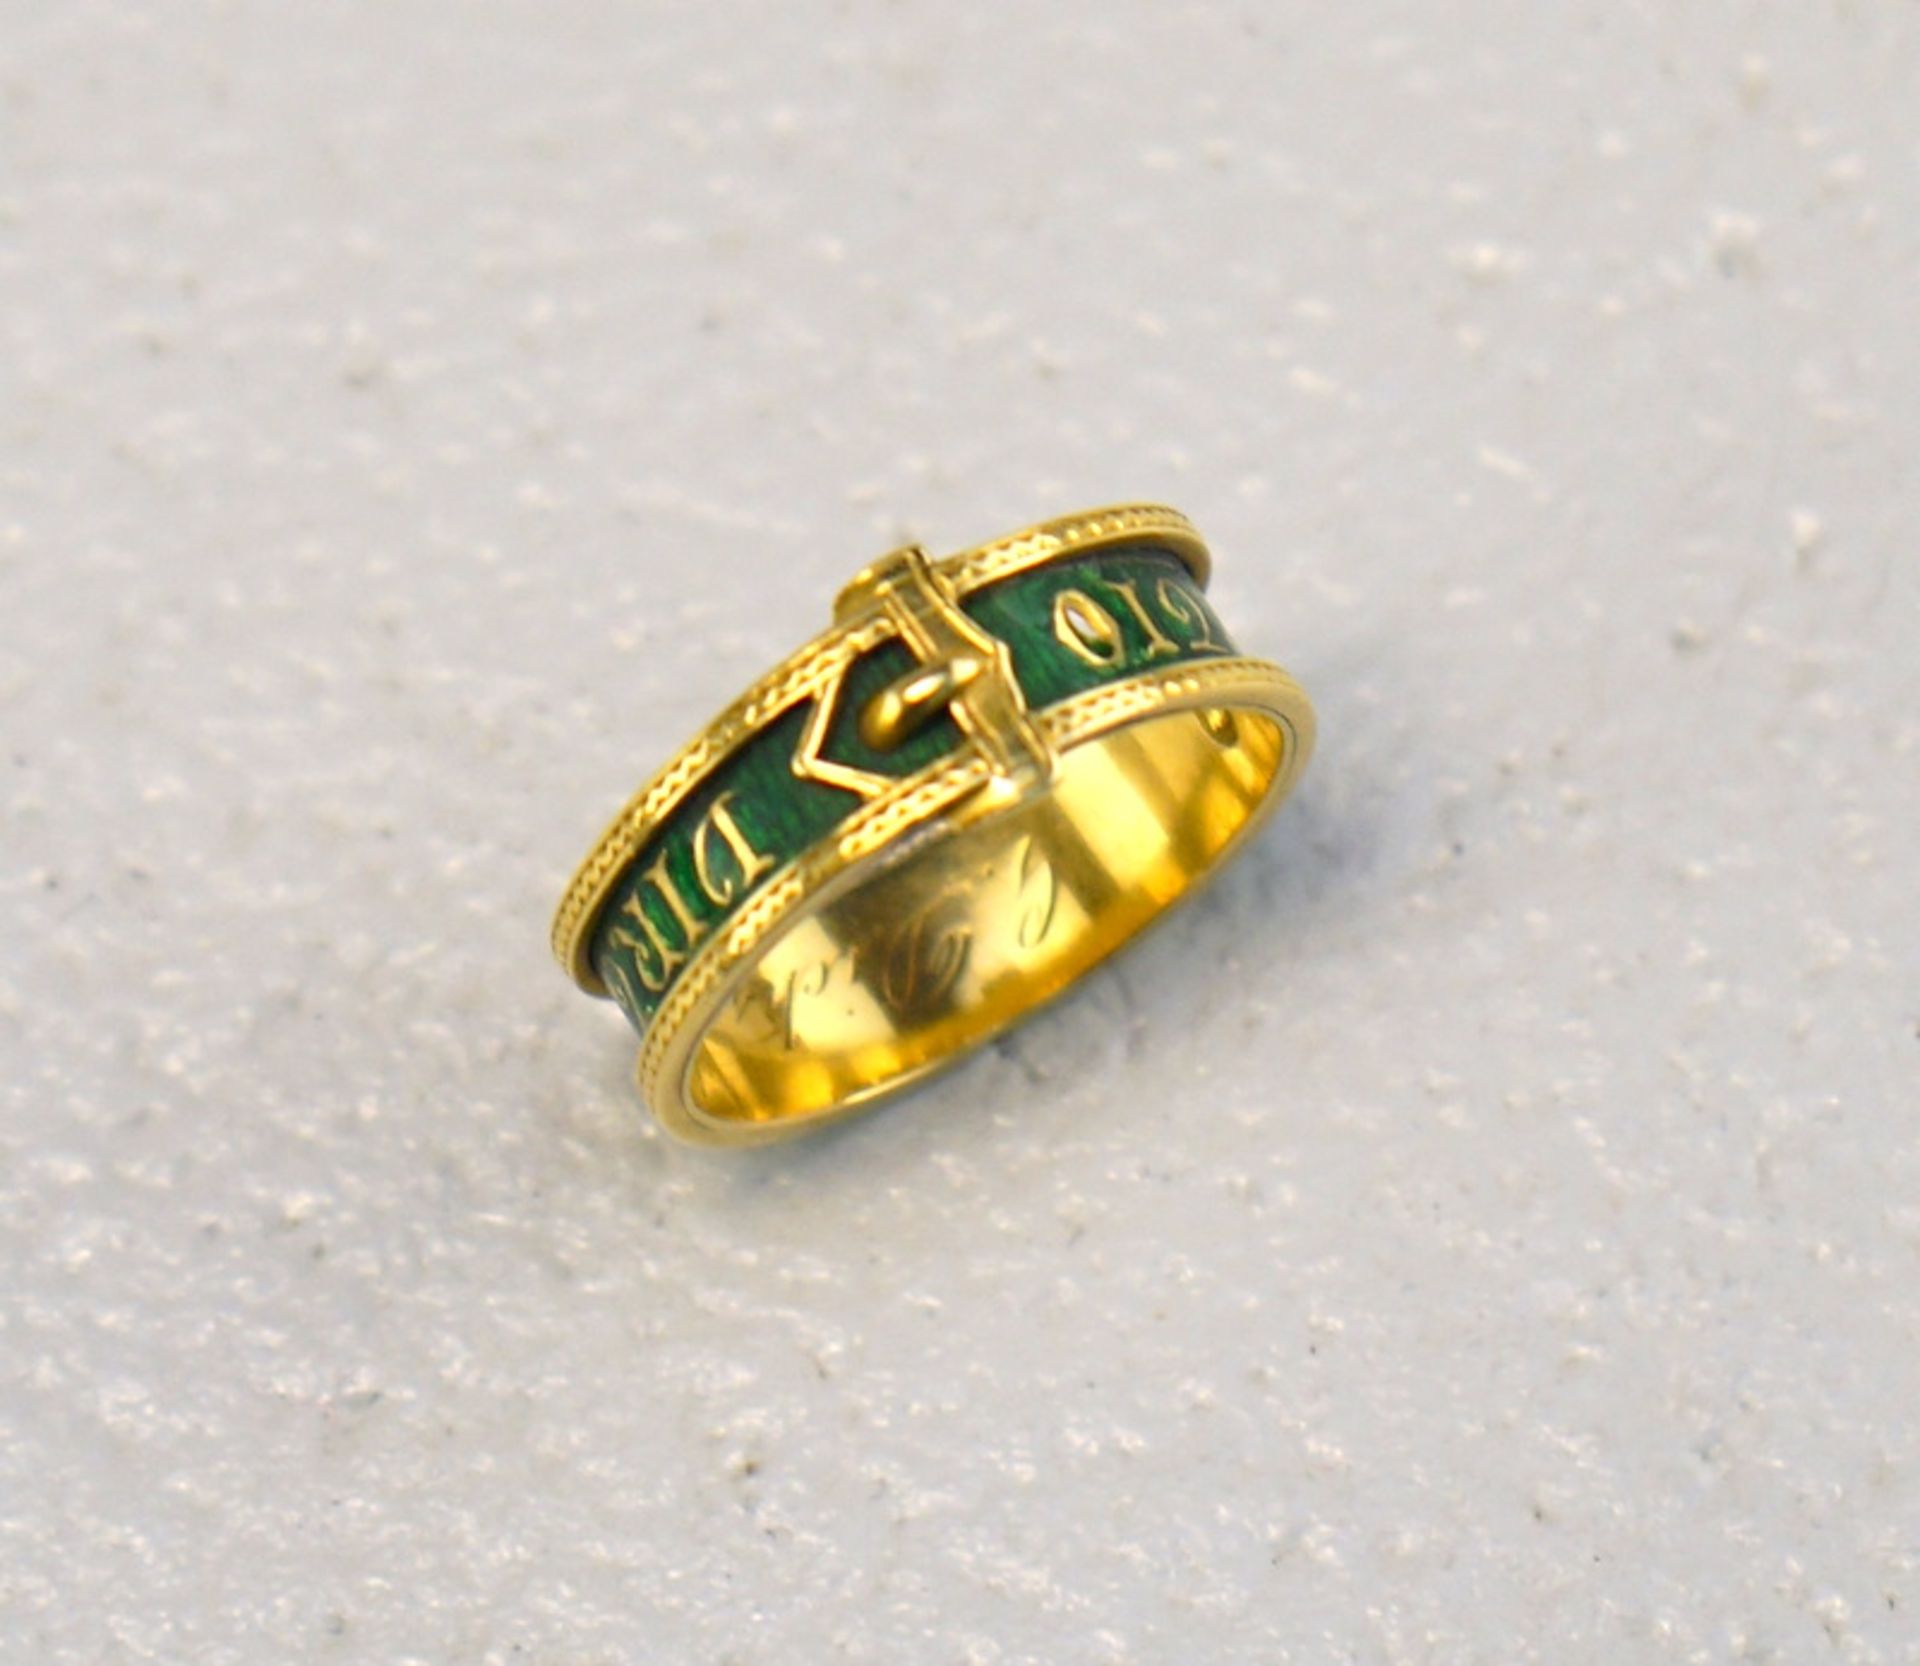 Freimaurer Ring der Royal Order of Scotland, 18k Gold mit Email - Image 2 of 3